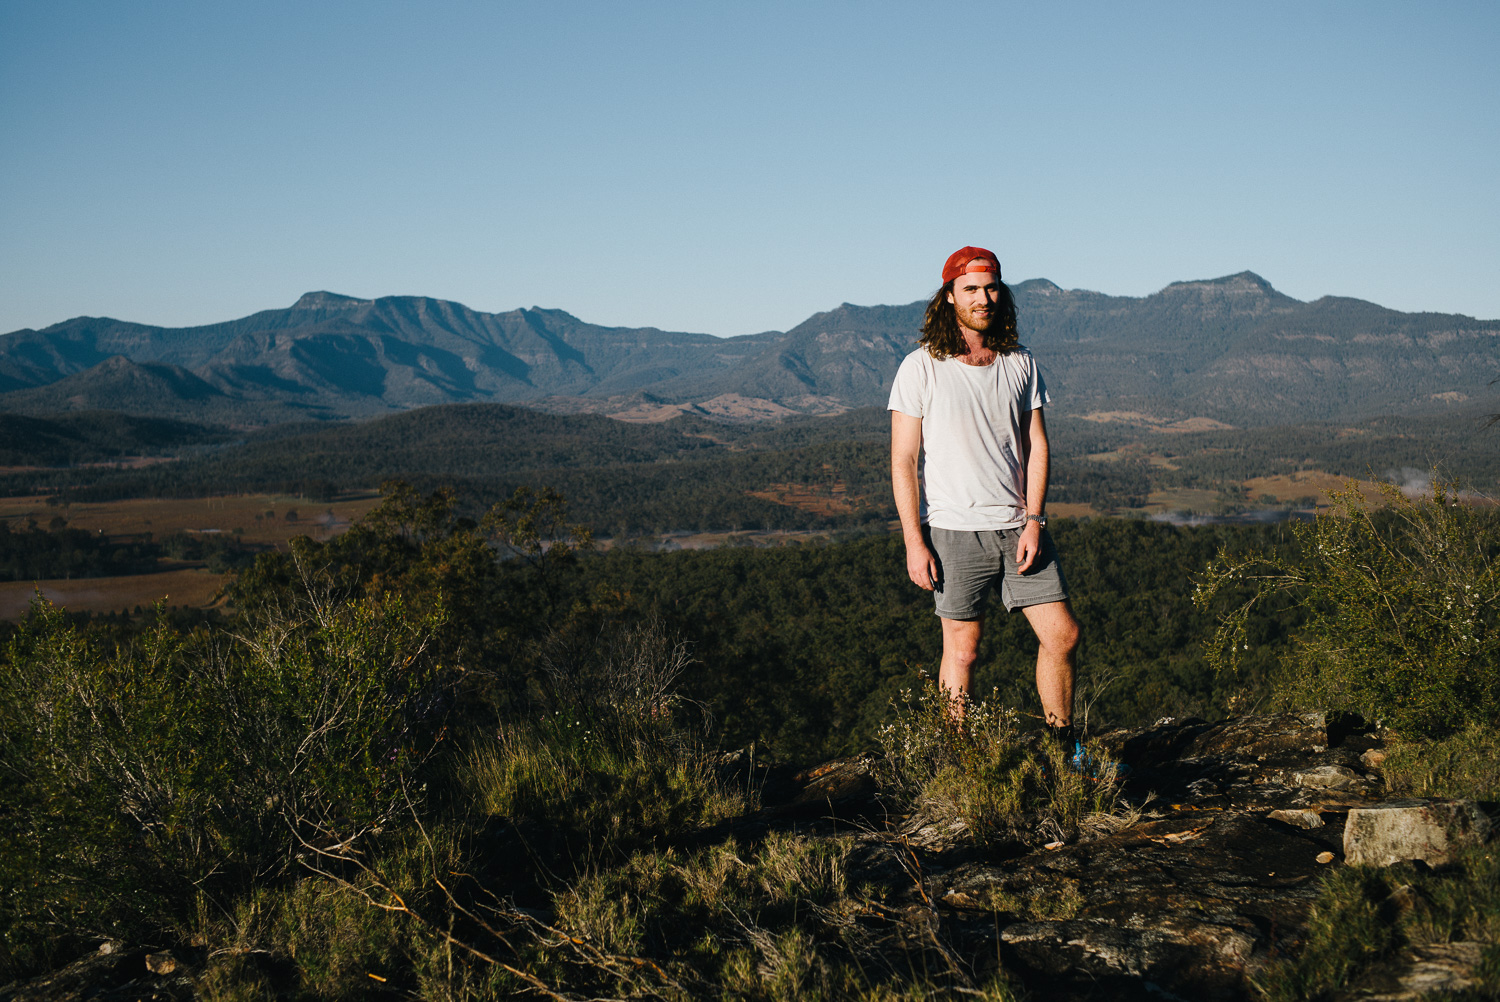 Nick-Bedford-Photographer-20160829_MtGreville_070849-Bushwalking, First Light, Hiking, Leica M Typ 240, Mount Greville, Mountains, Portrait, Queensland, Summarit 35mm, Sunrise, VSCO Film.jpg